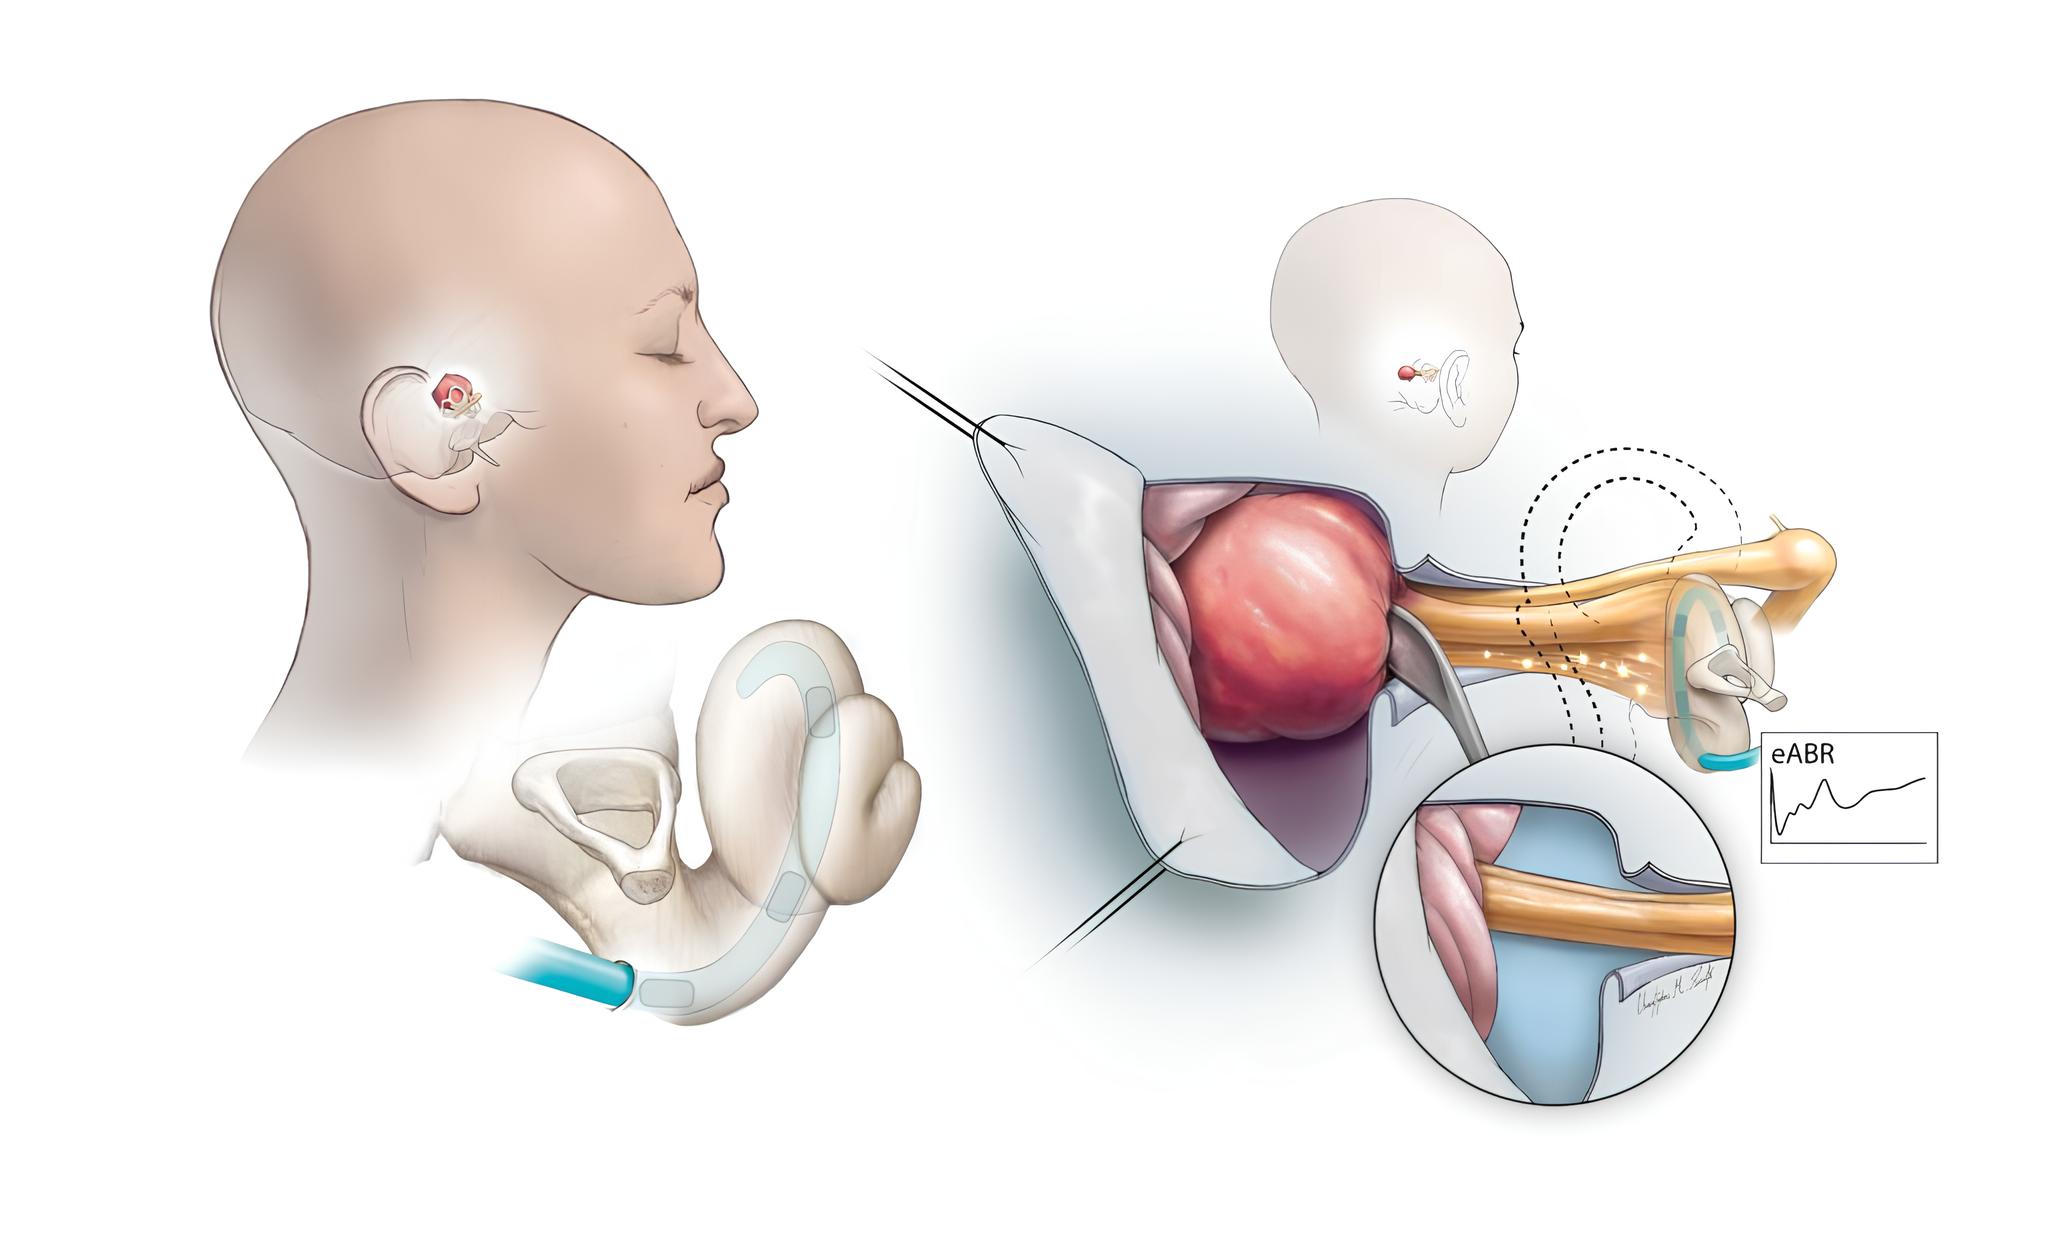 Resimde, kulaktaki bir koklear implantın işitme siniri boyunca nasıl bir sinyal gönderebileceği gösterilmektedir. Ameliyat sırasında tümör çıkarıldığından, bu sinyal cerrahların işitme sinirinin sağlığını izlemesine yardımcı olur.